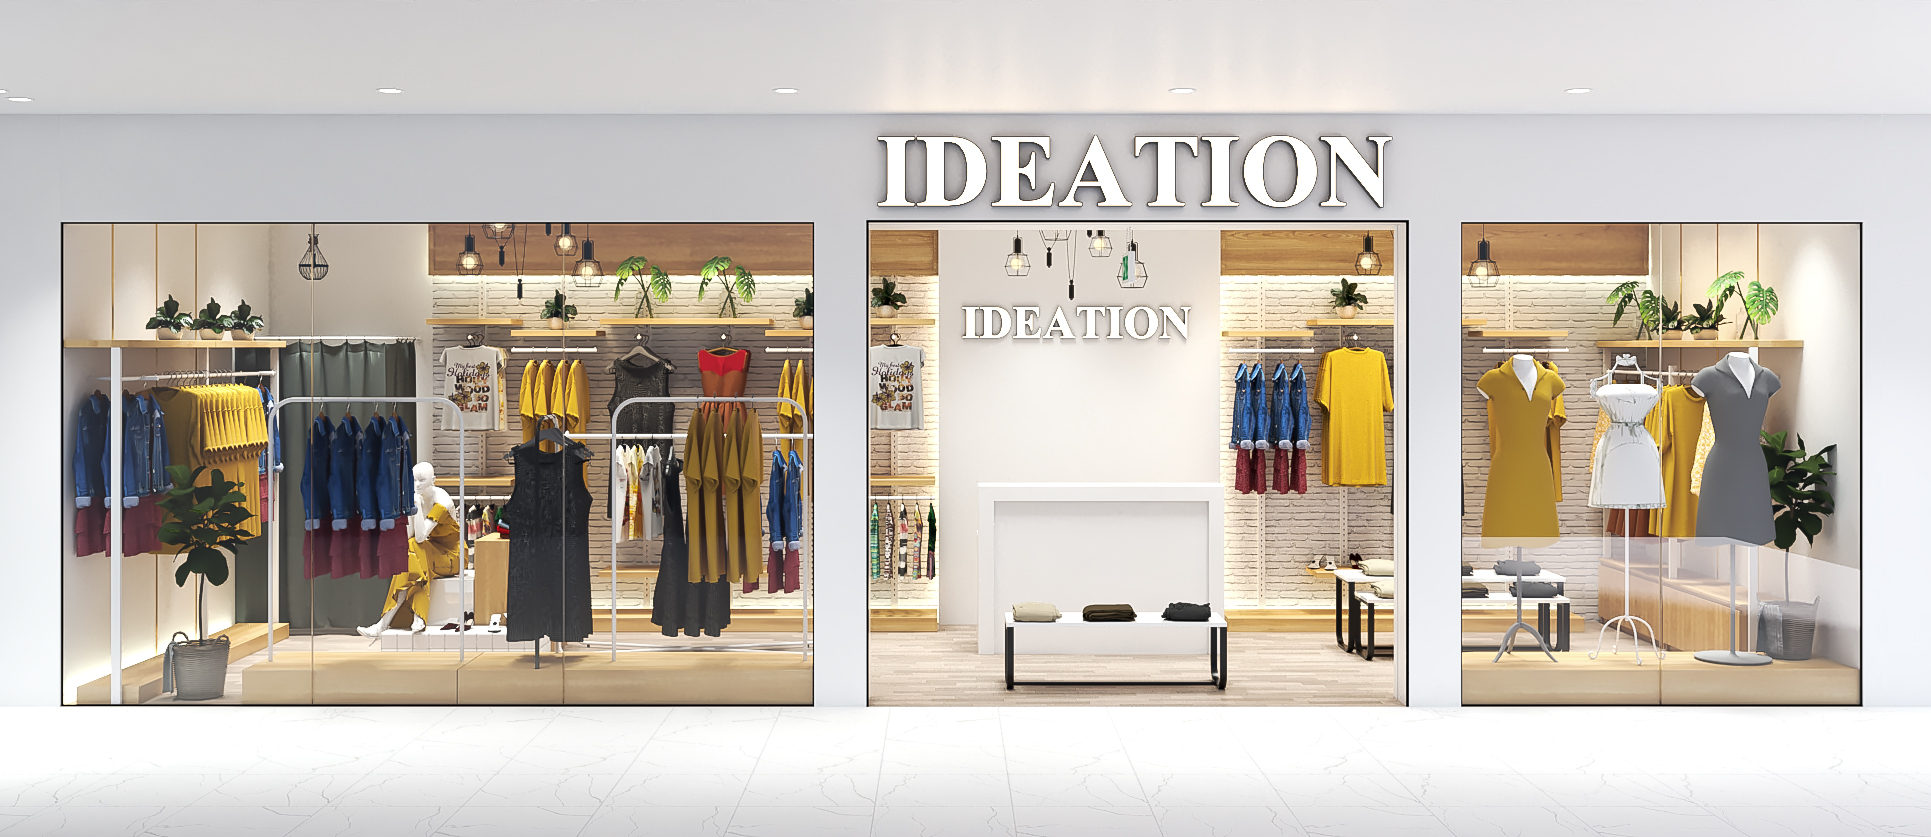 Thiết kế nội thất Shop tại Bình Dương ideation fashion 1575691873 3